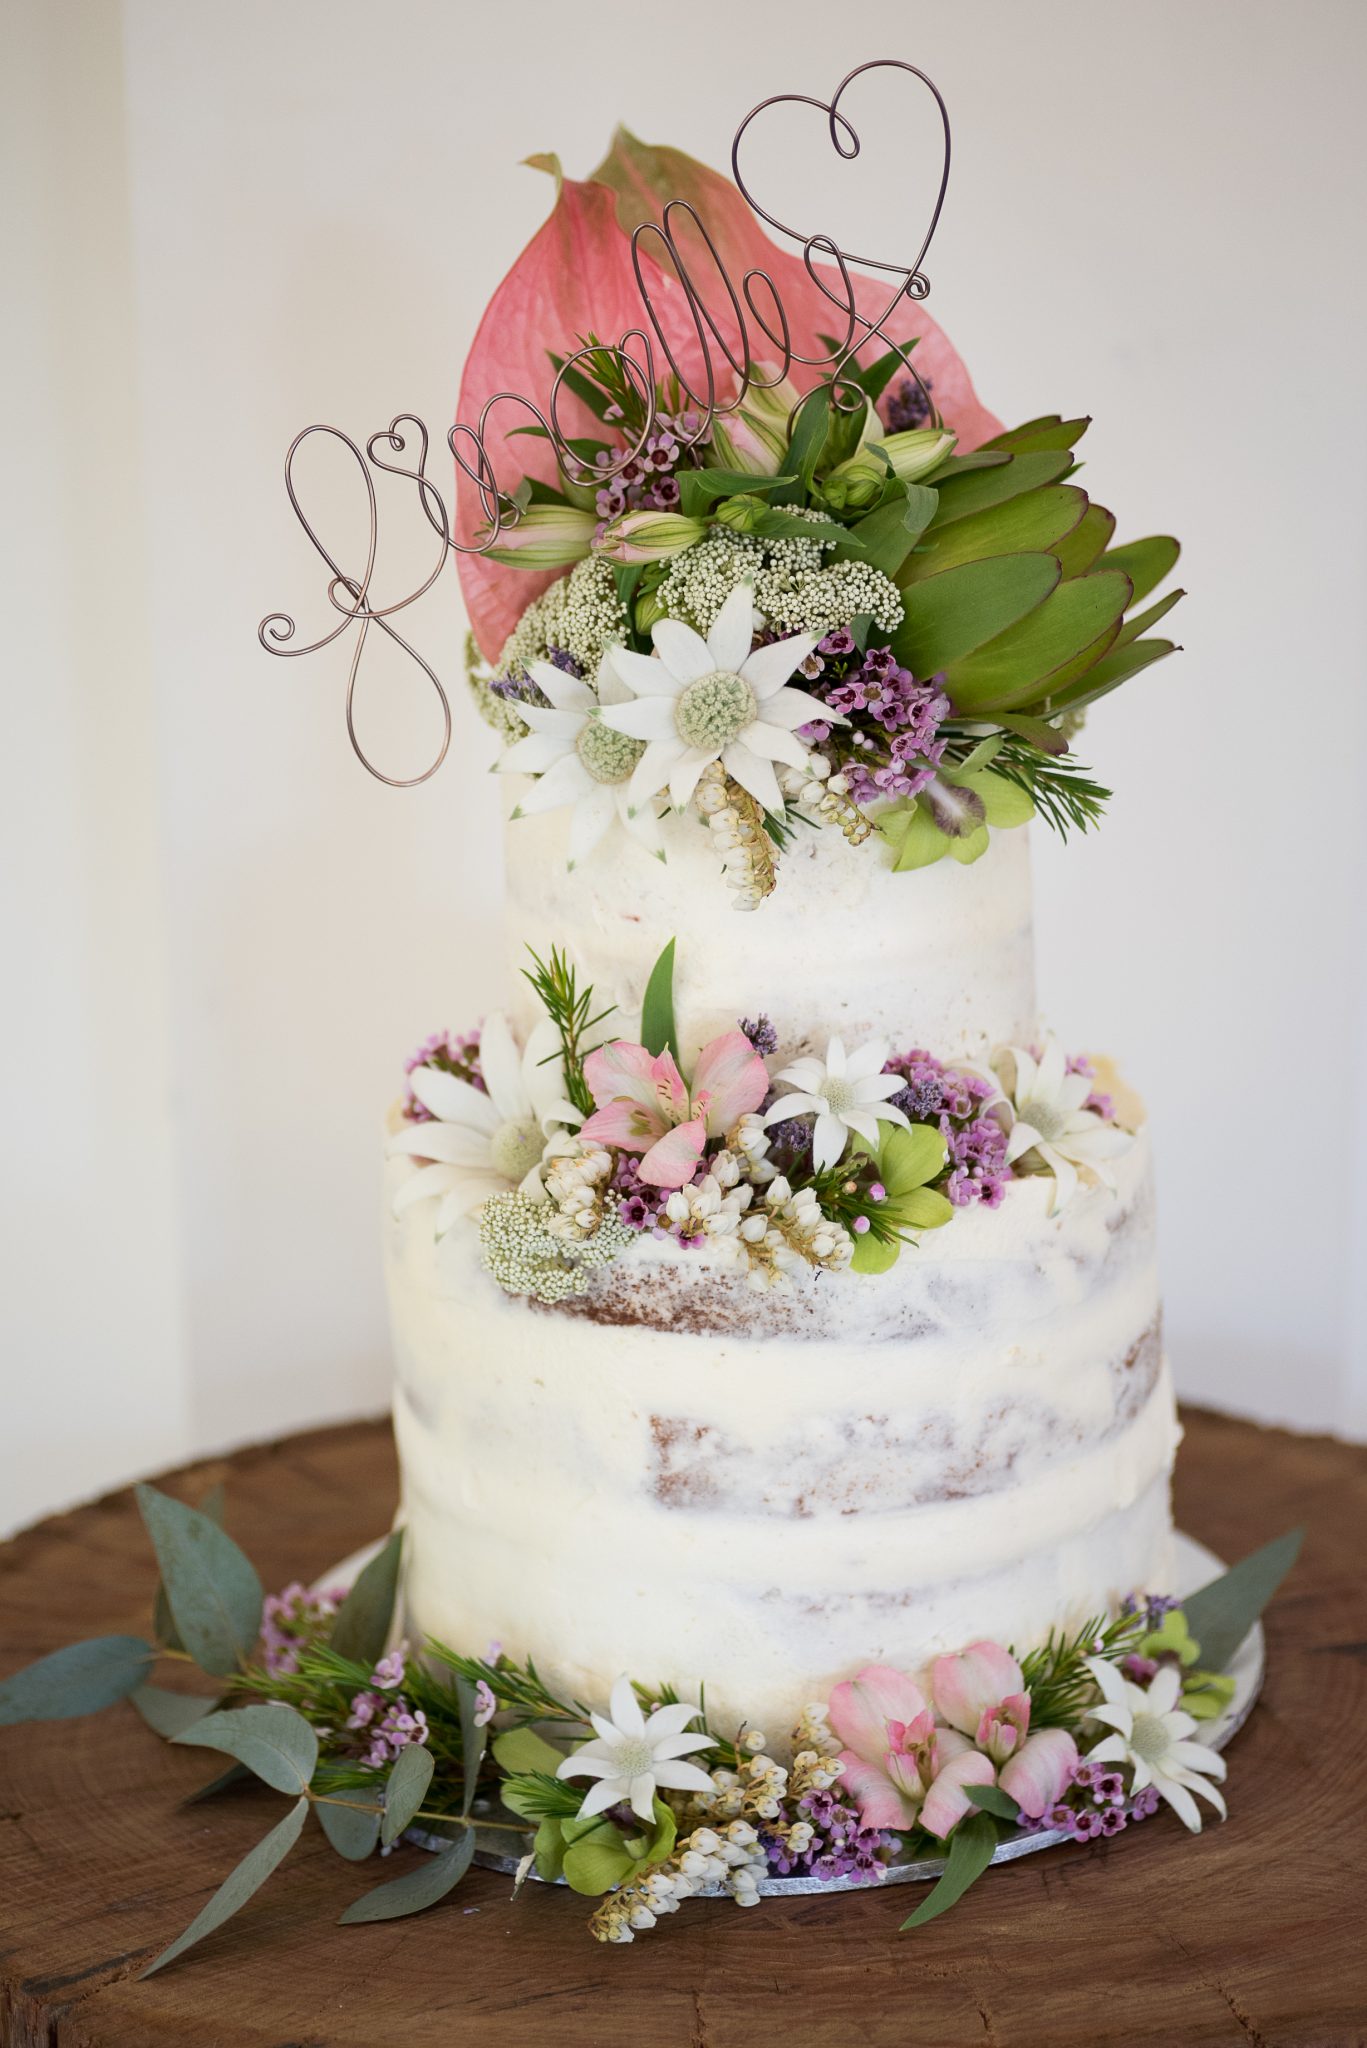 Keryn's wedding cake